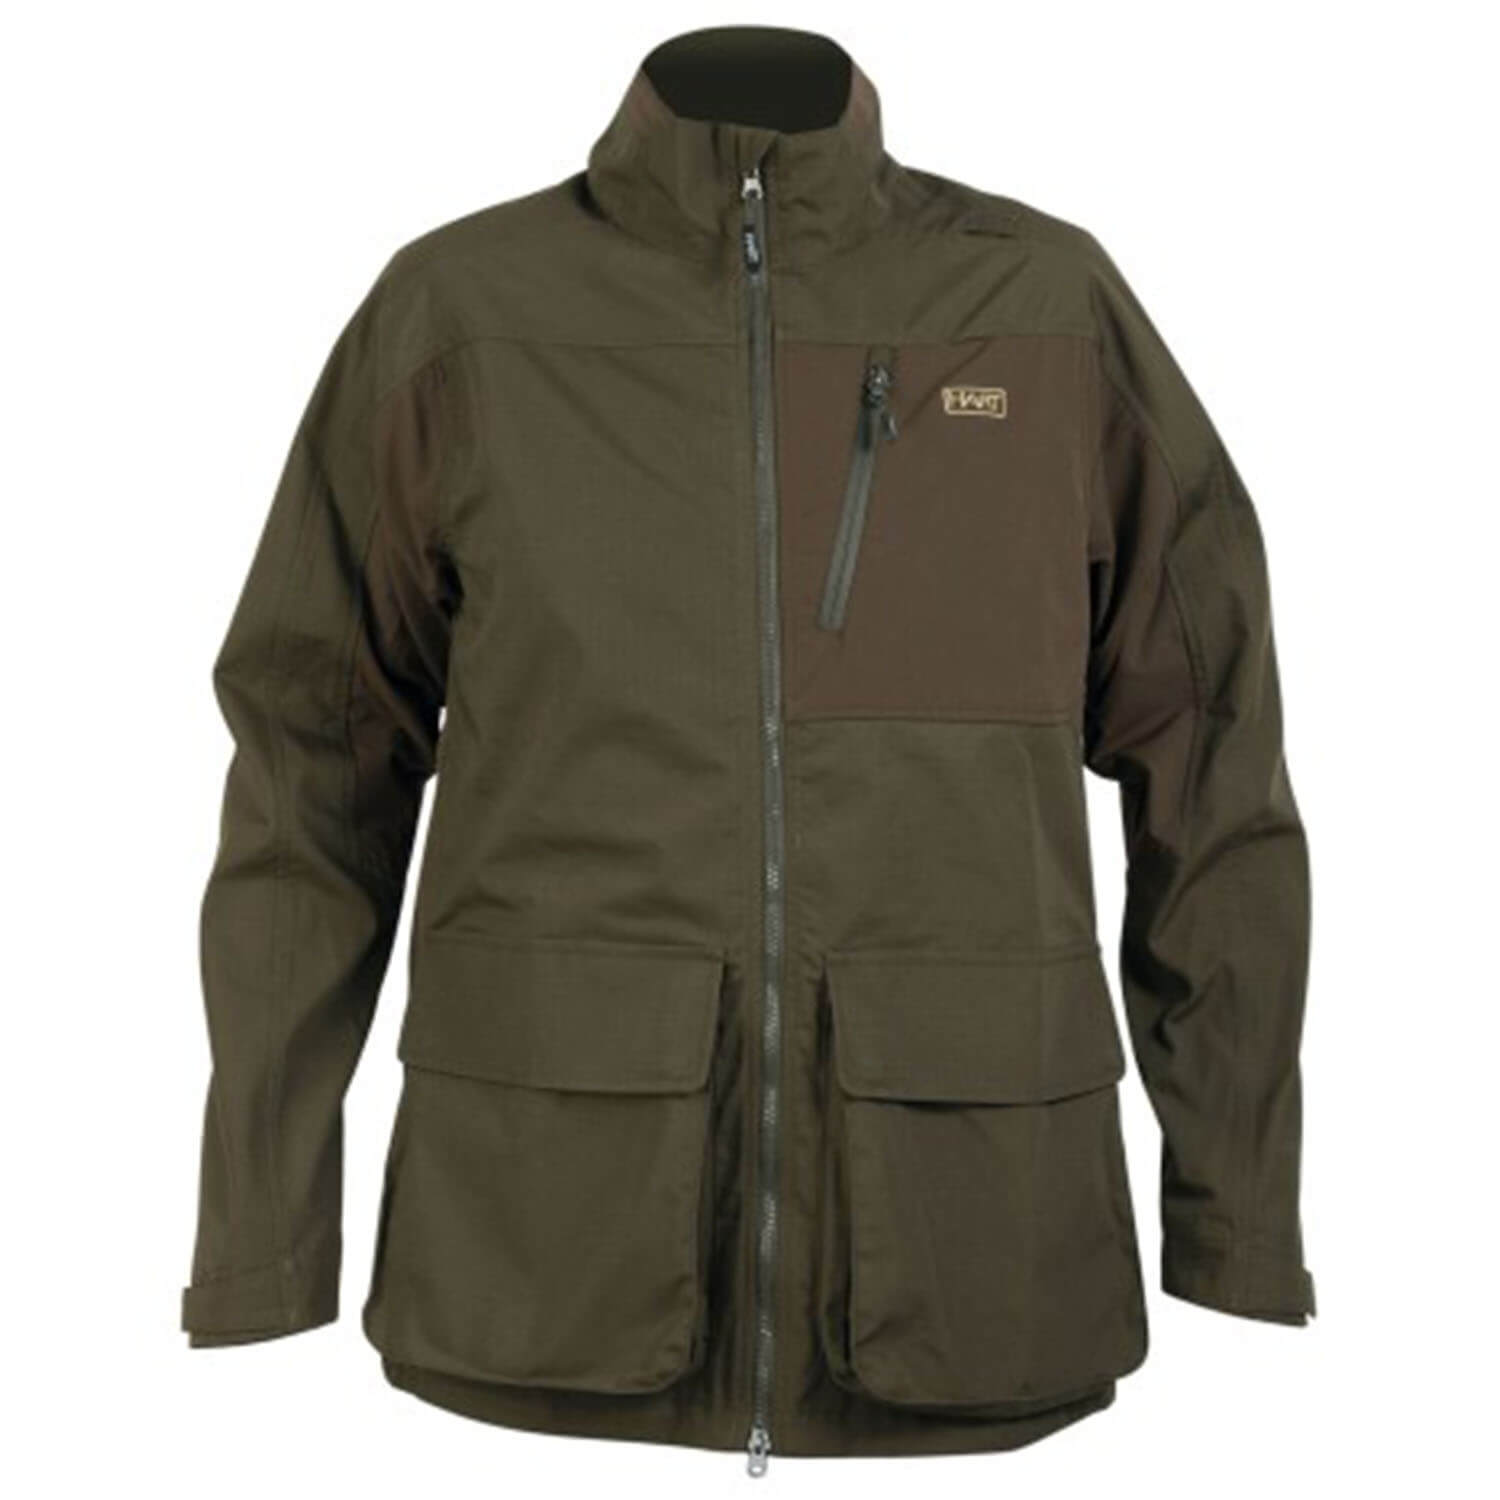  Hart Pafos hunting jacket - Hunting Jackets